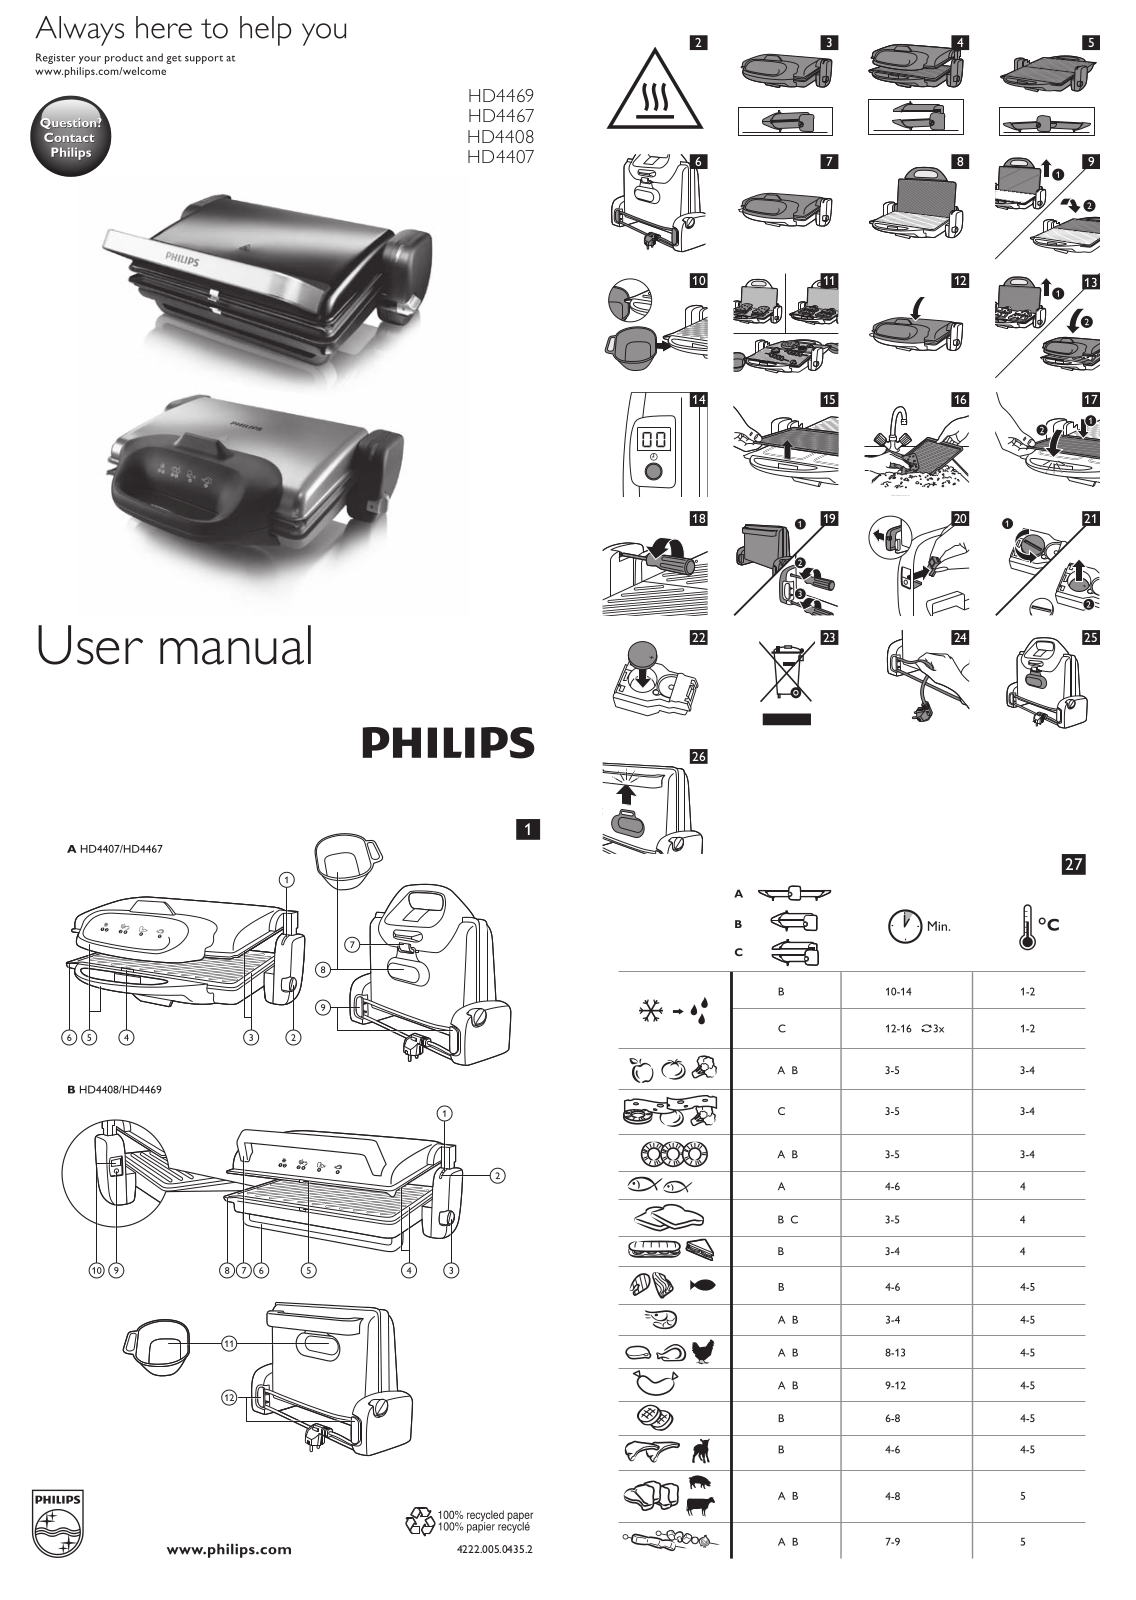 Philips HD4469, HD4407, HD4467, HD4408 User Manual